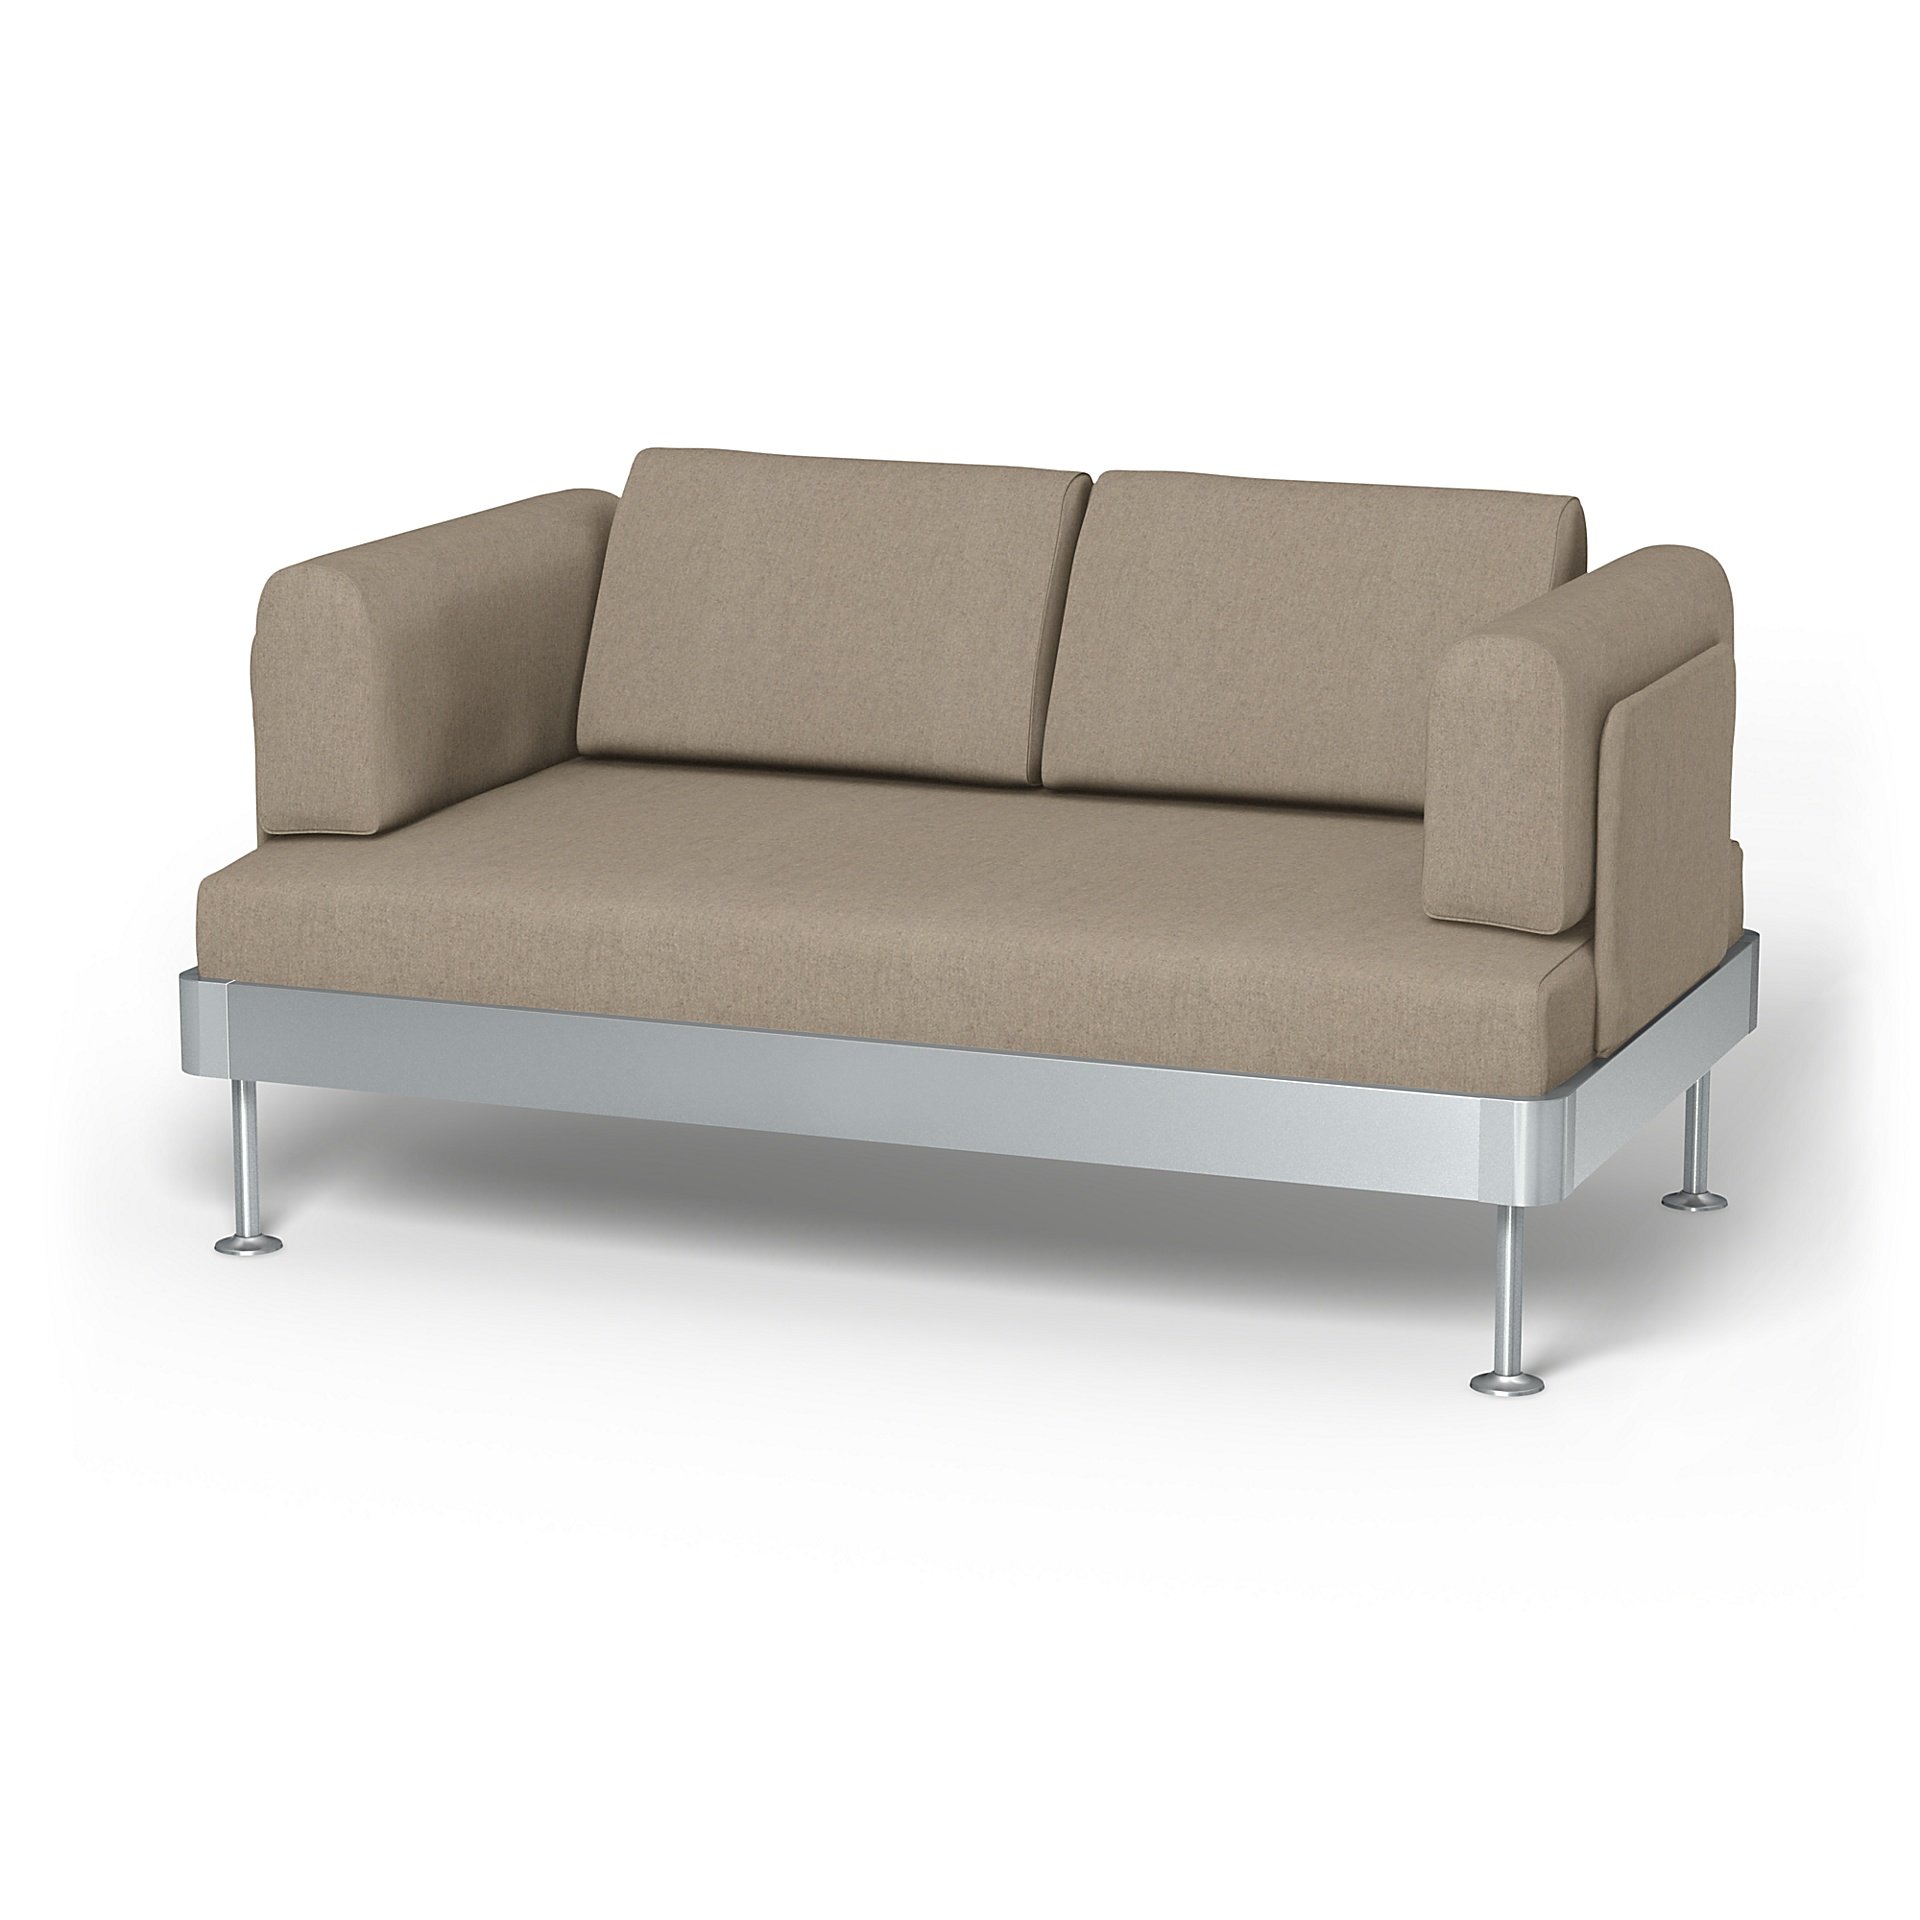 IKEA - Delaktig 2 Seater Sofa Cover, Birch, Wool - Bemz